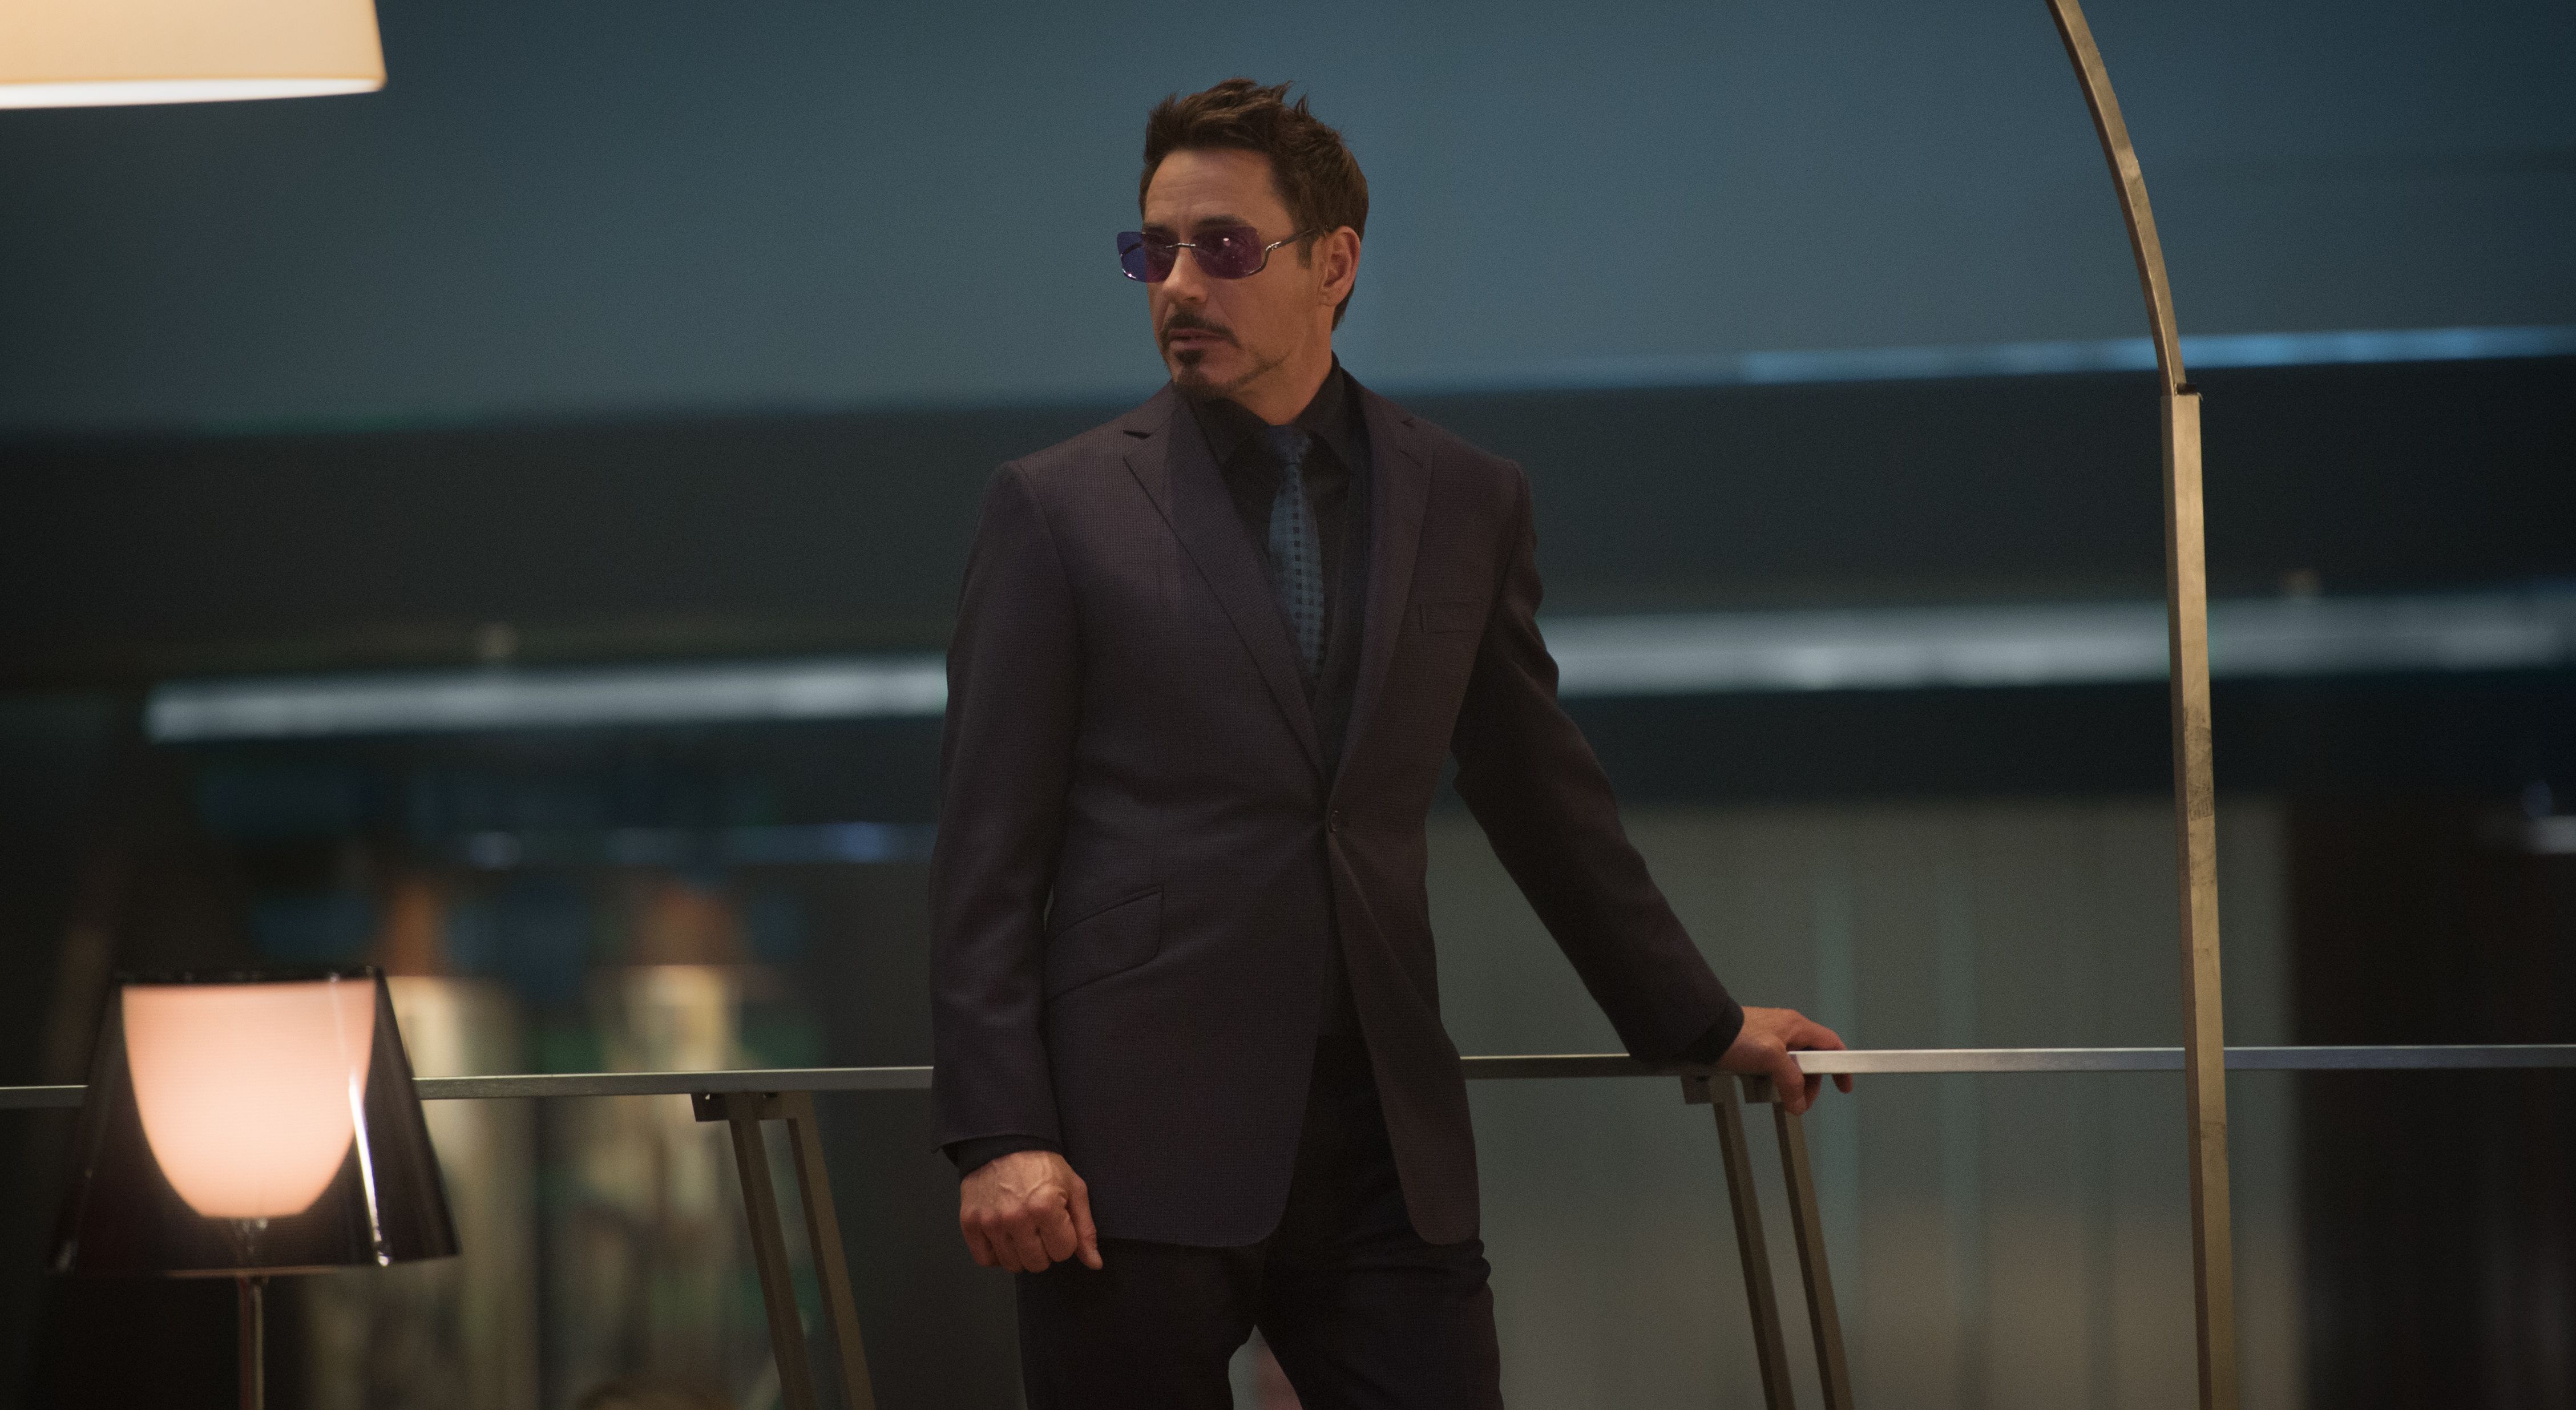 Robert Downey Jr Suit and Tie